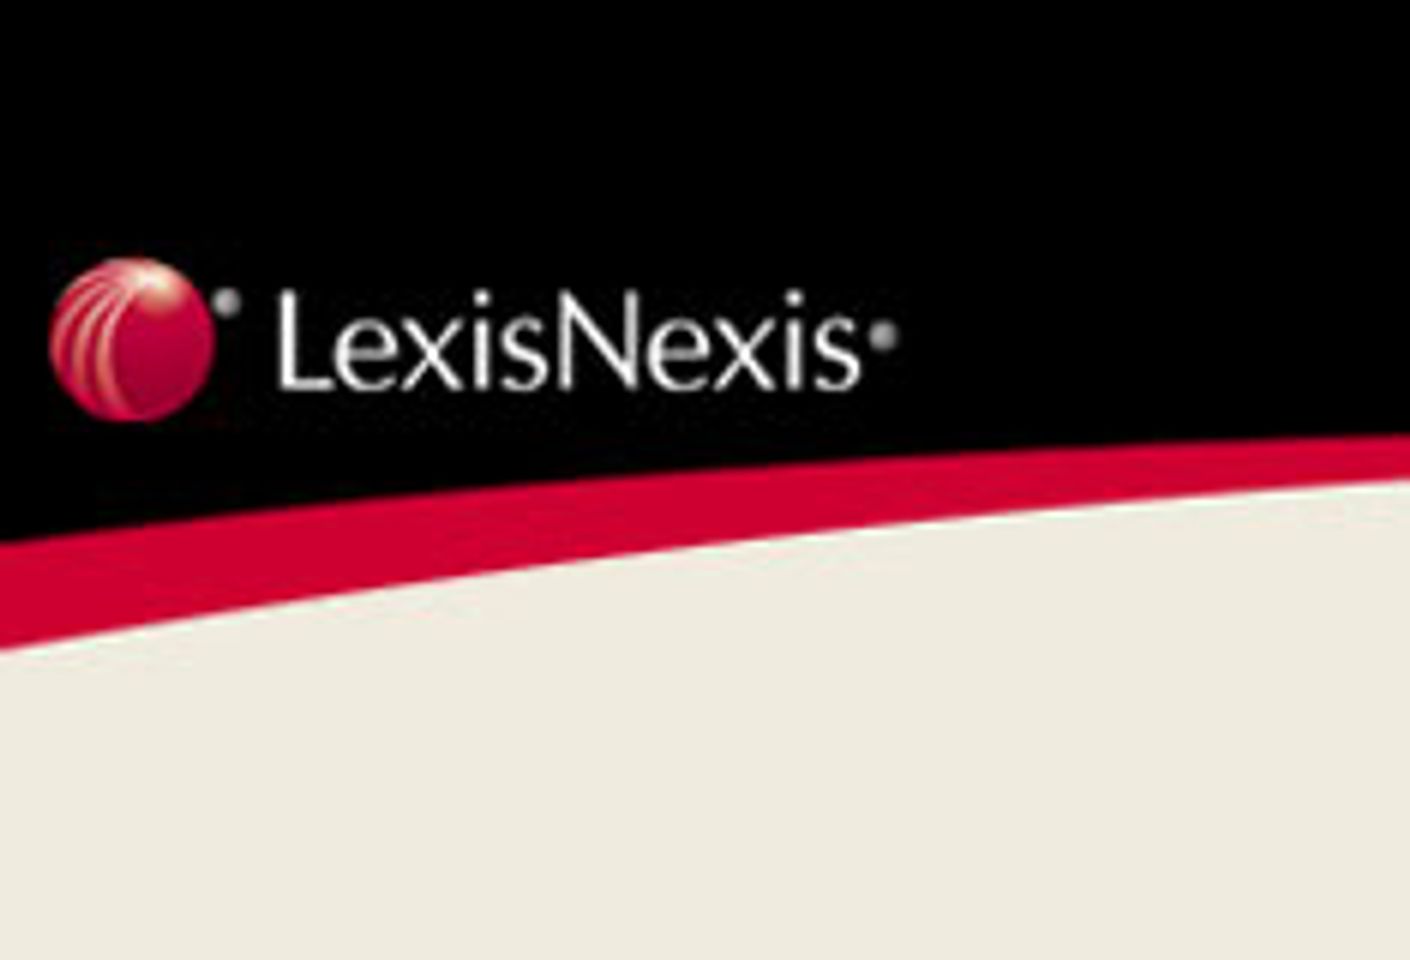 LexisNexis Databases Hacked